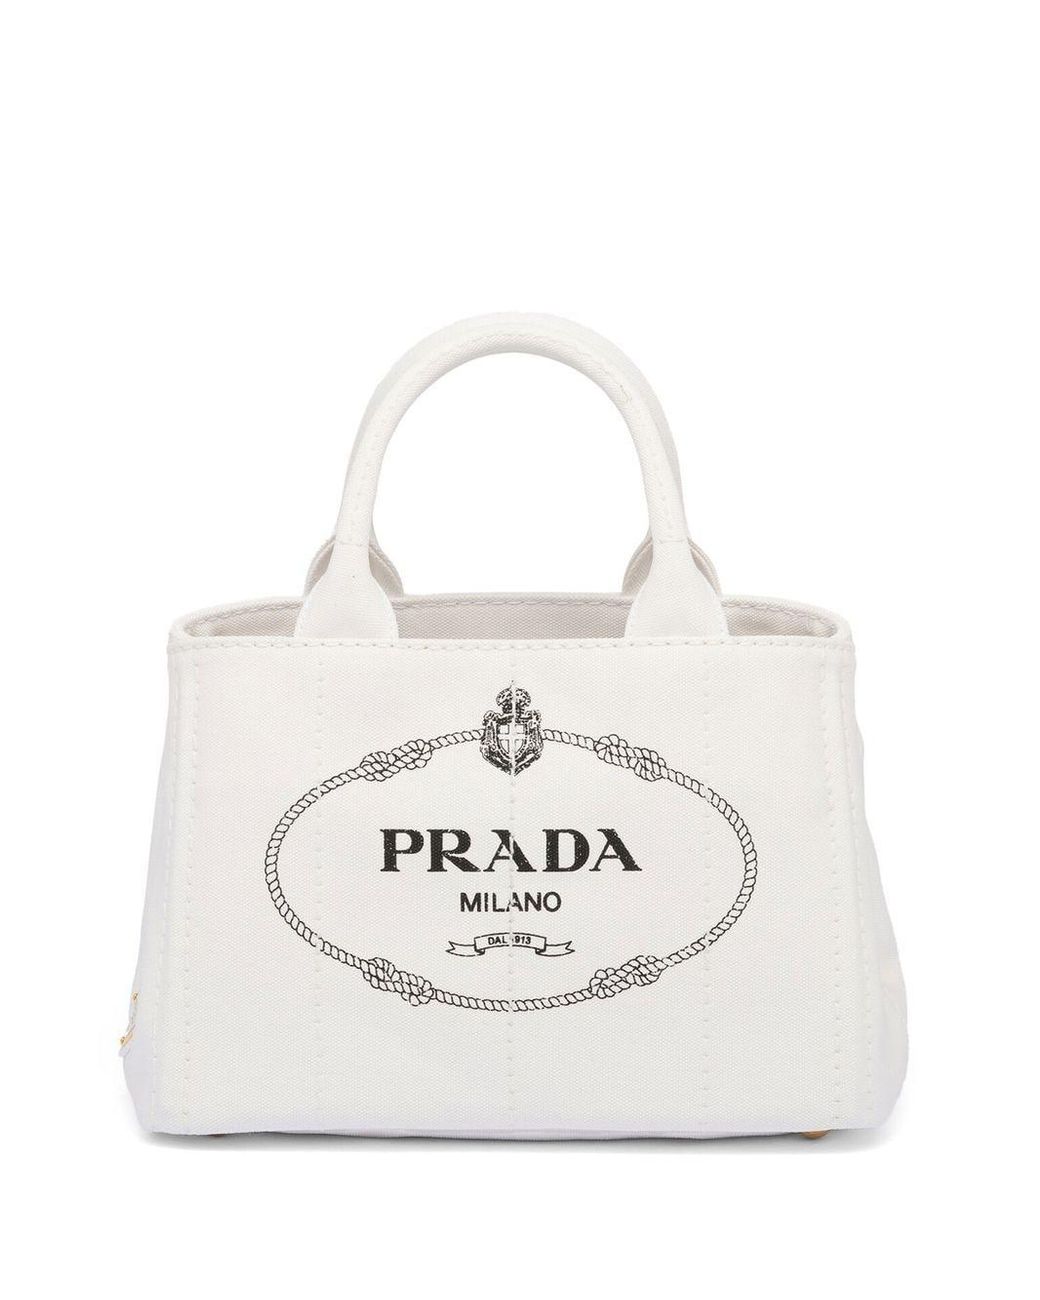 Prada, Bags, Prada Milano Saffiano Dal 913 Sm Black Tote Bag